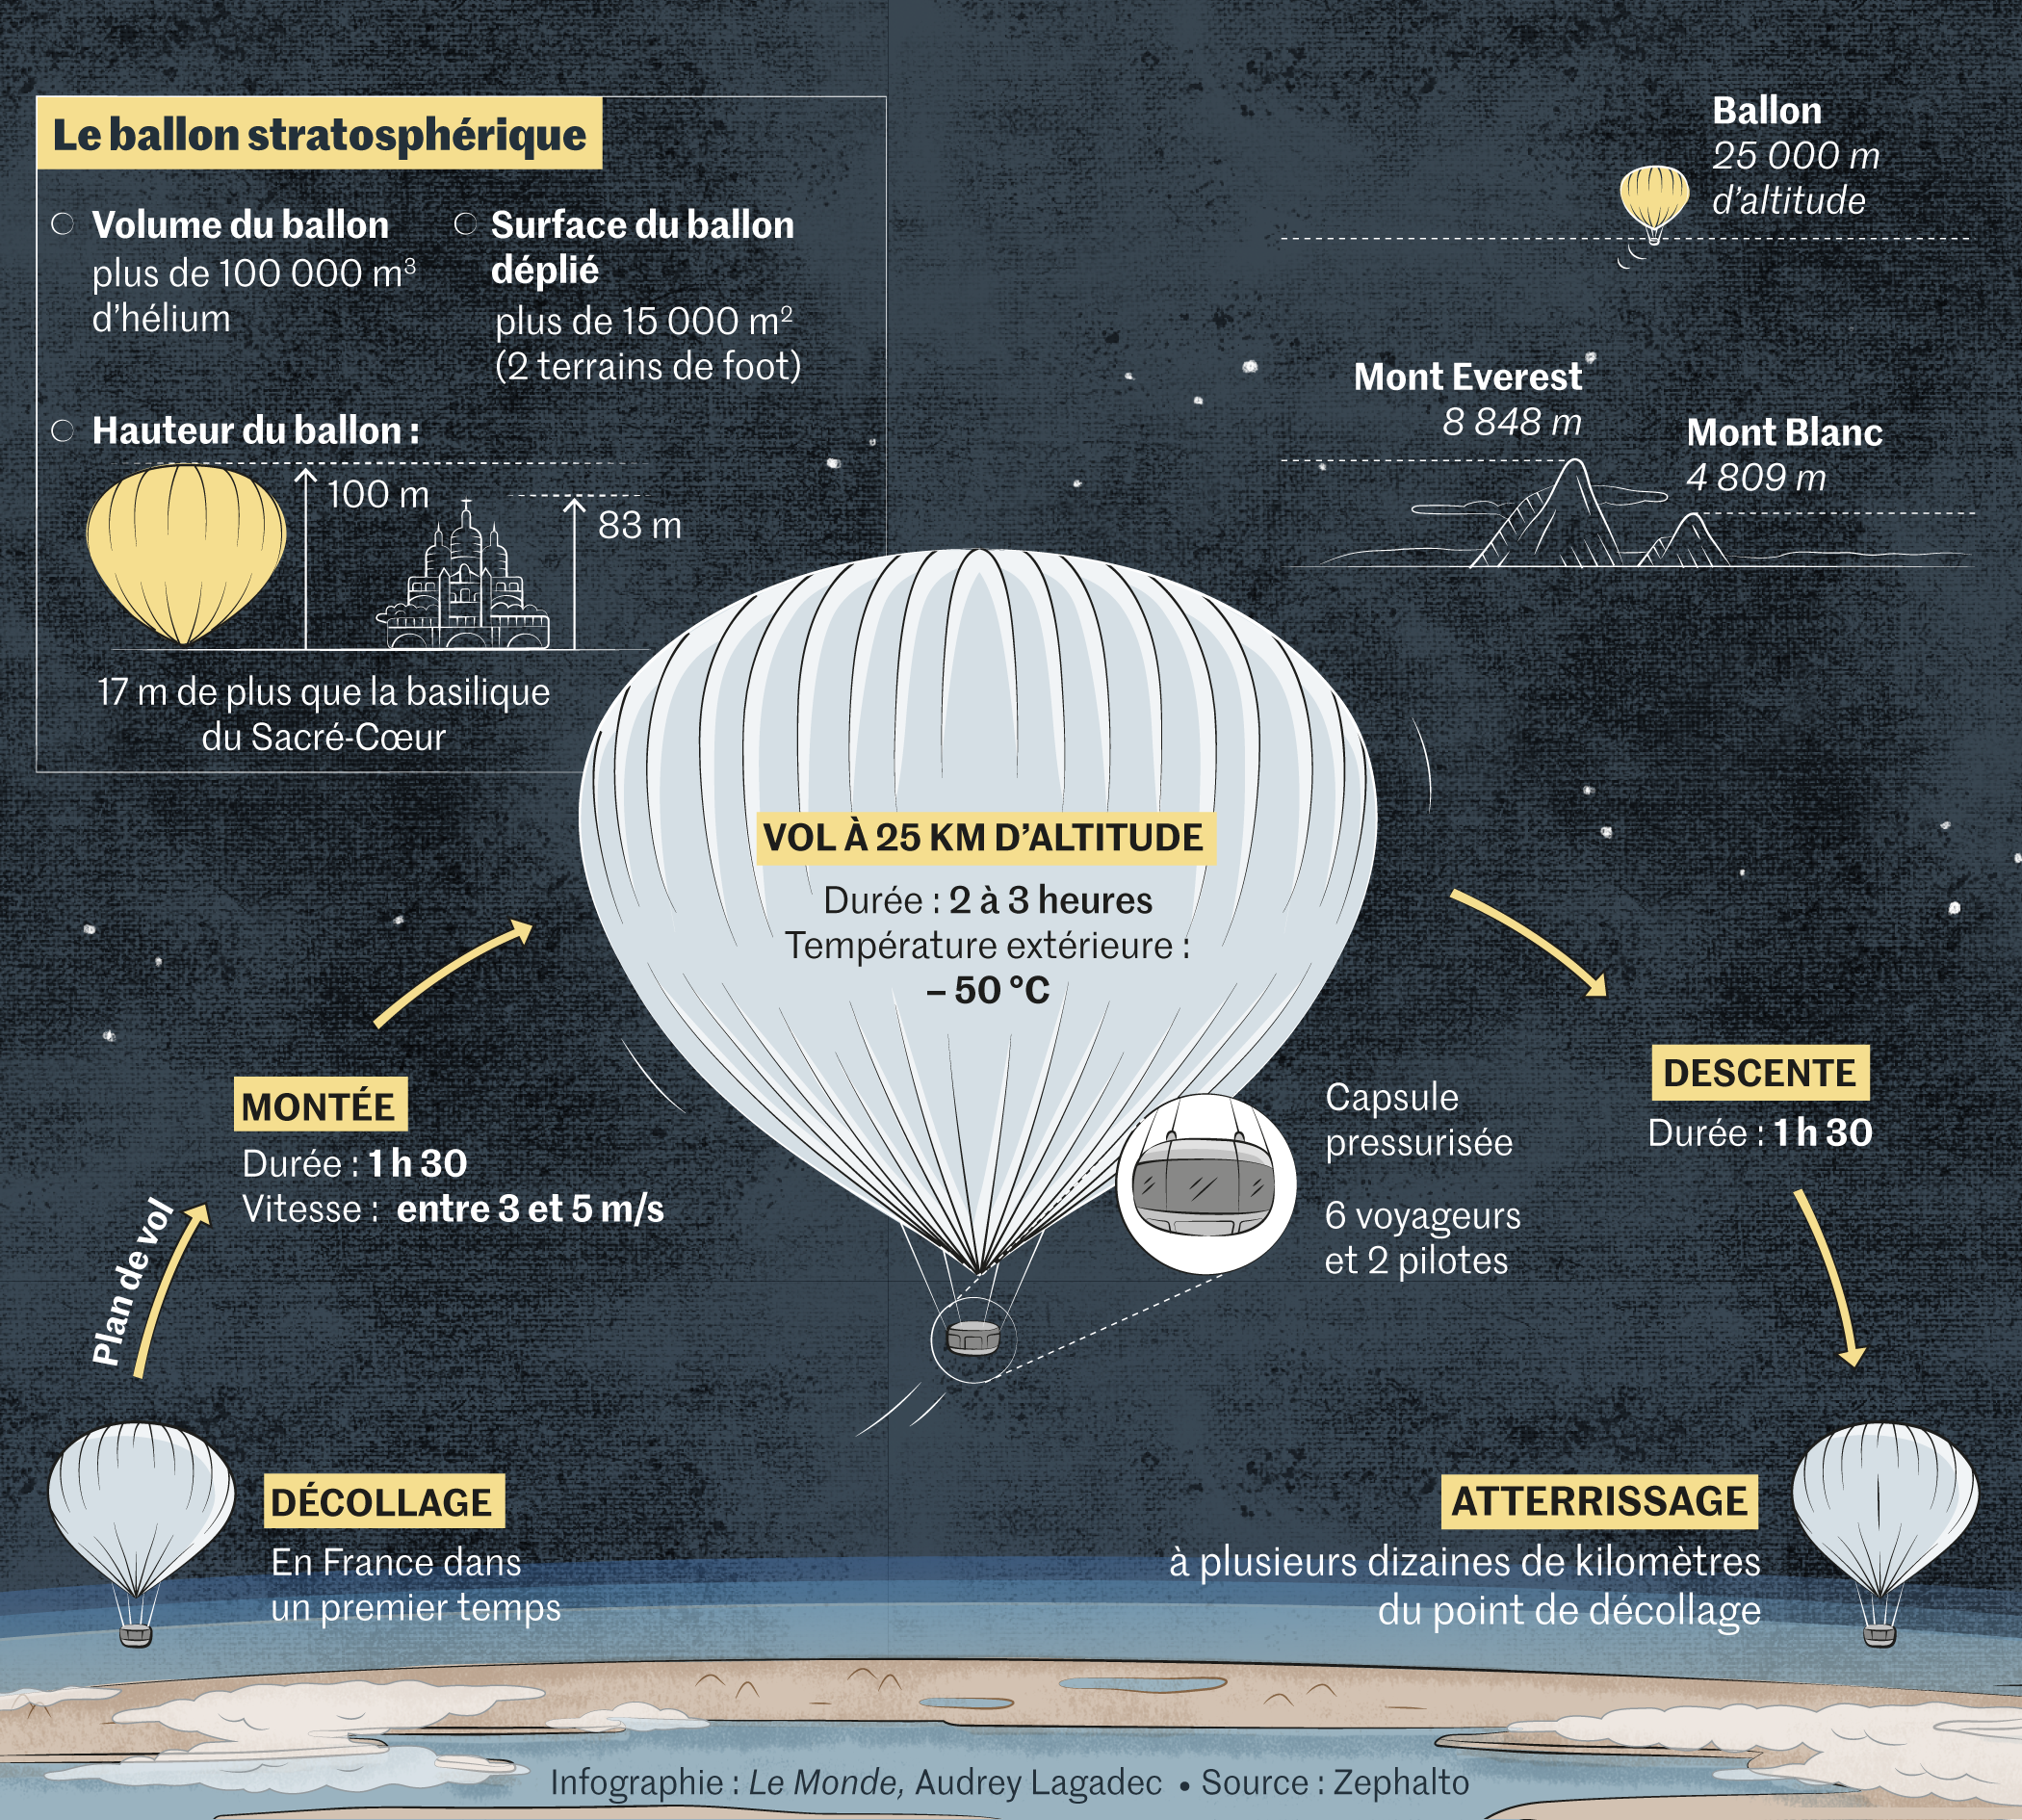 Du tourisme spatial par ballon stratosphérique ? C'est ce qu'une entreprise  rêve d'accomplir - Numerama